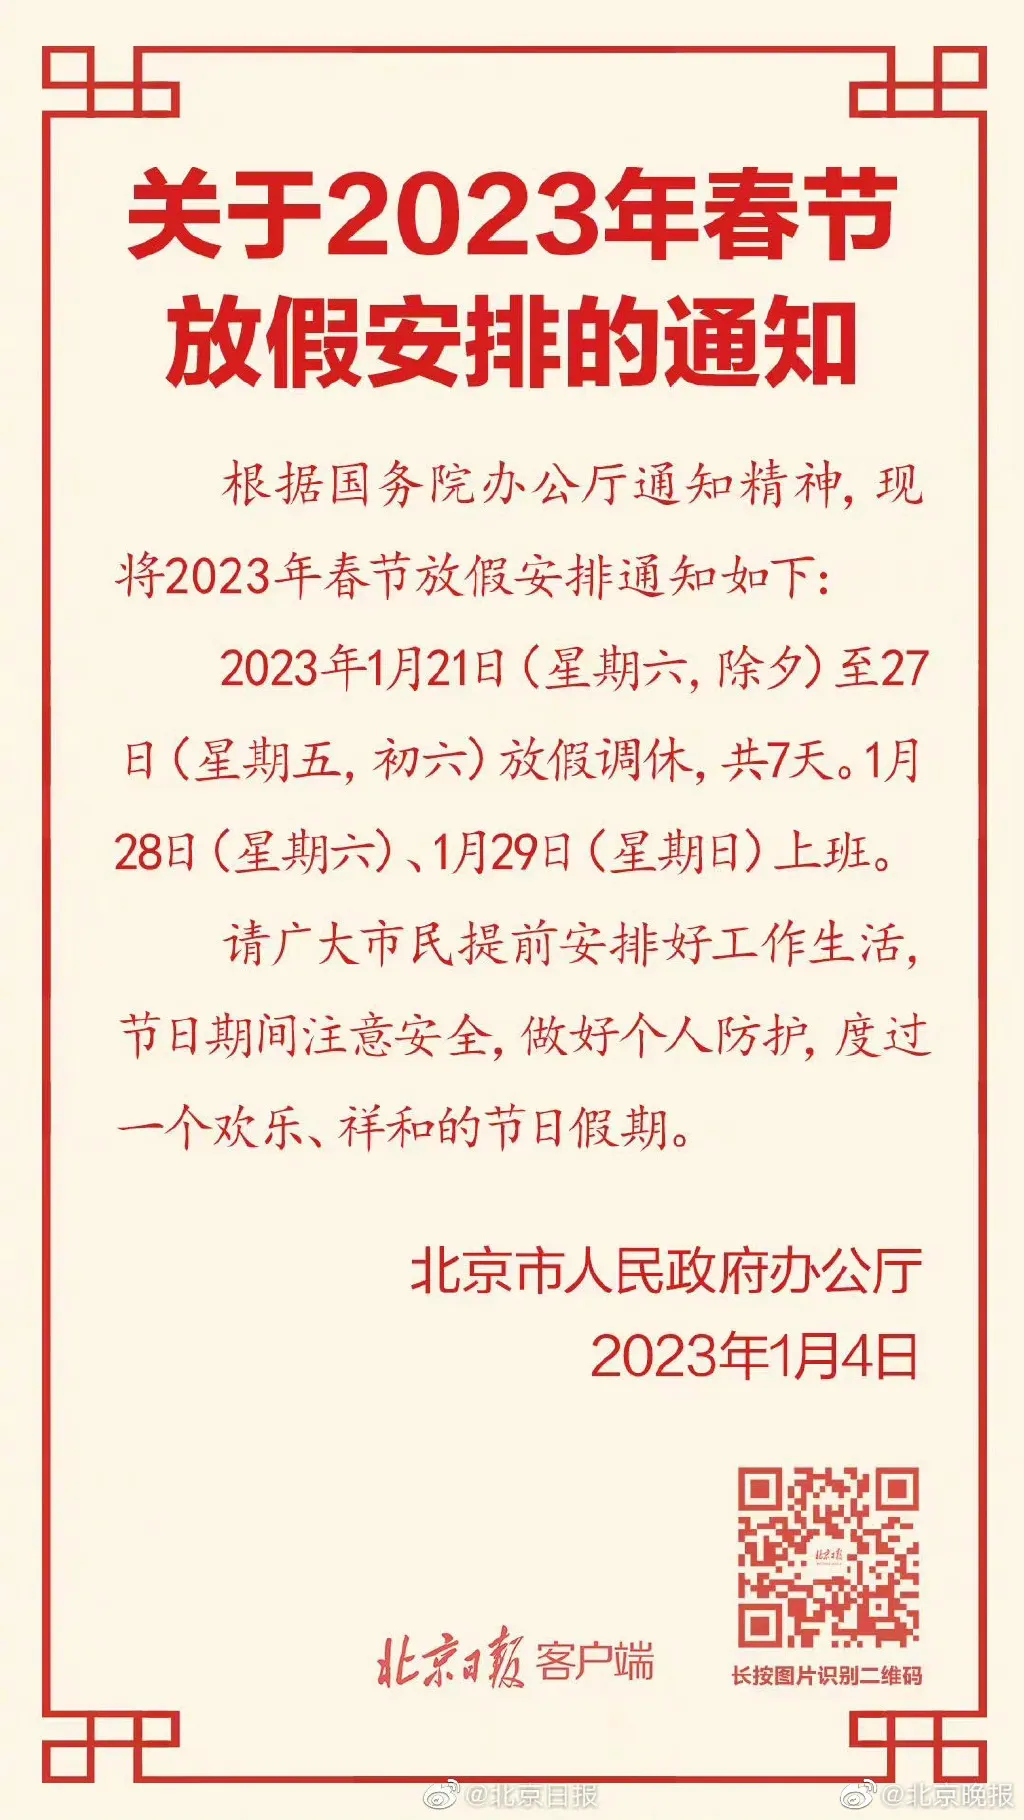 调休2023 春节调休2023 调休2023年